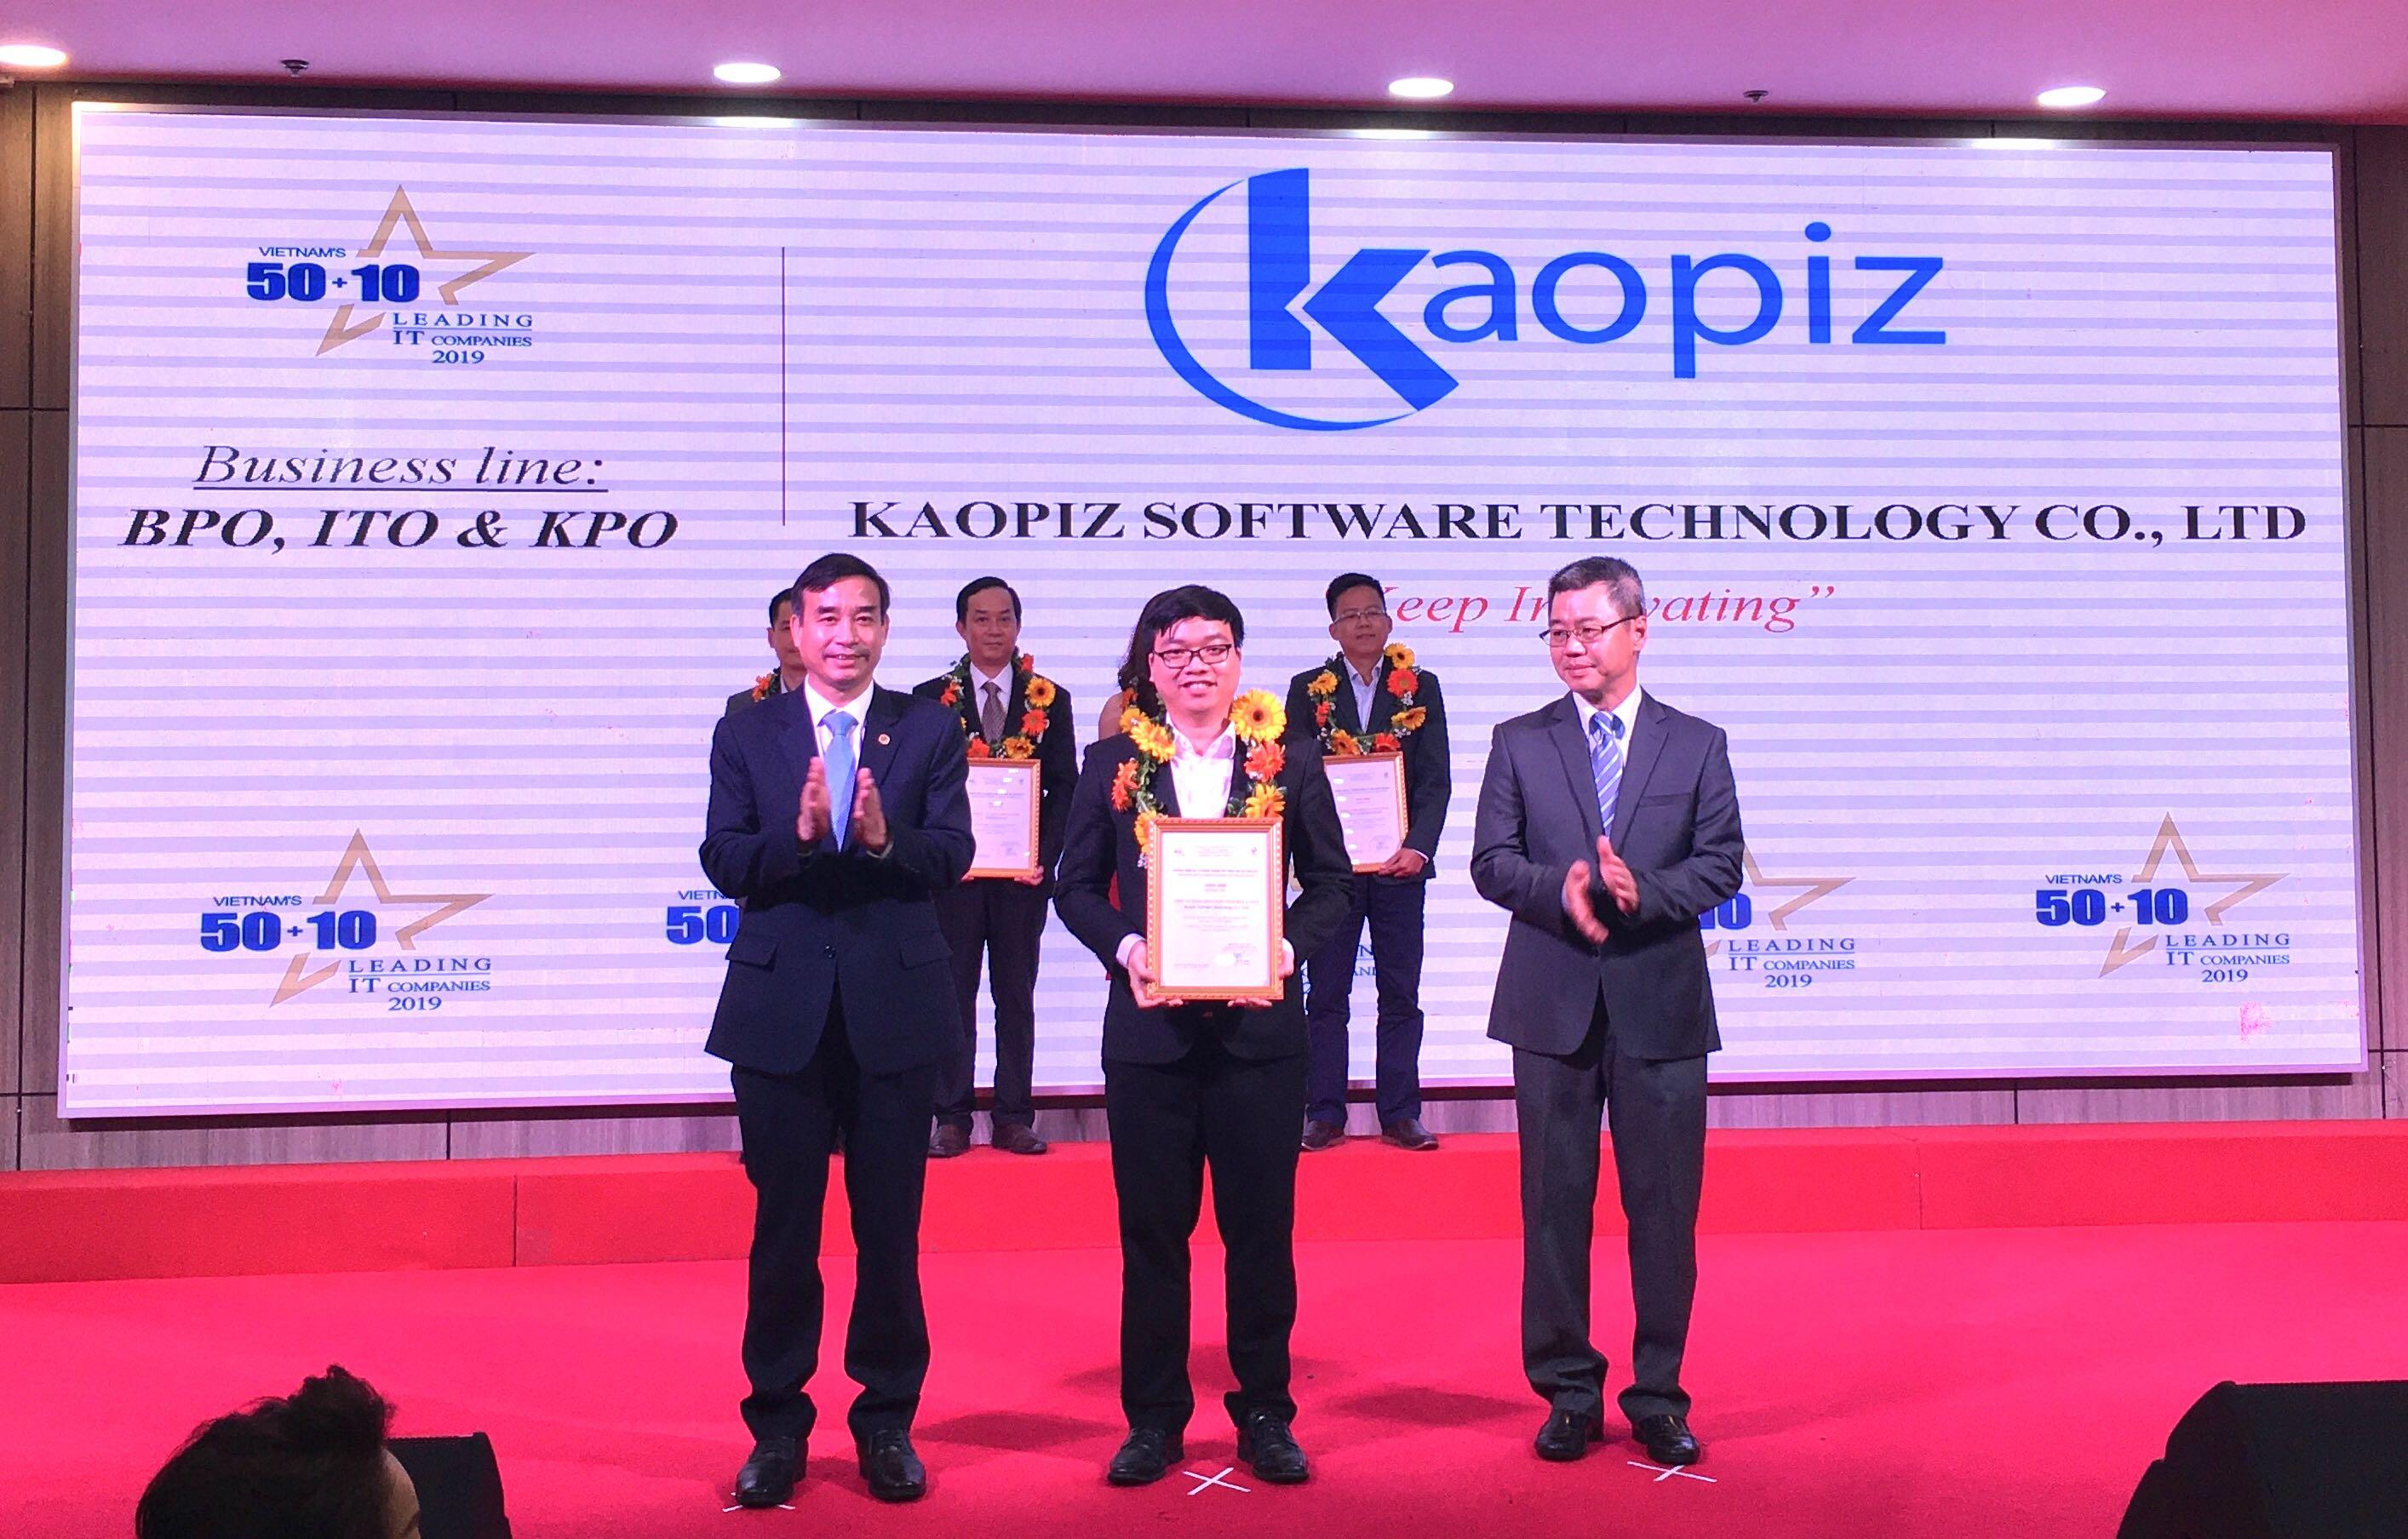 Kaopiz_Vietnam's 50+10 leading IT companies 2019